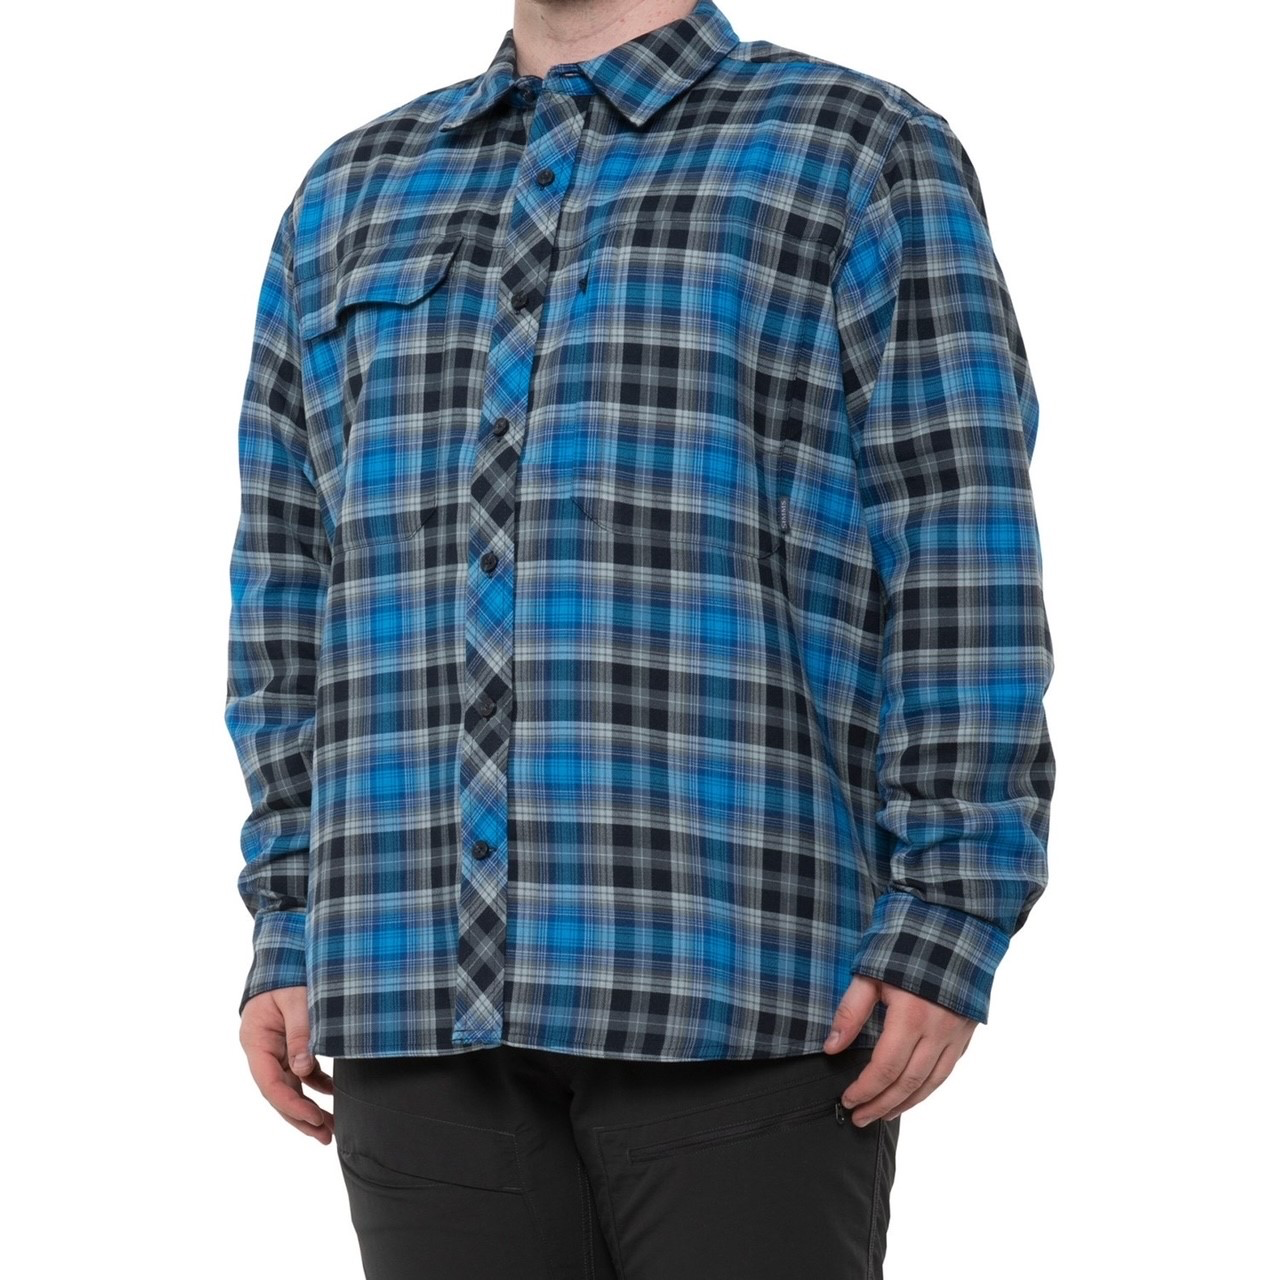 Simms M's Guide Flannel Shirt - Admiral Blue Plaid - Medium